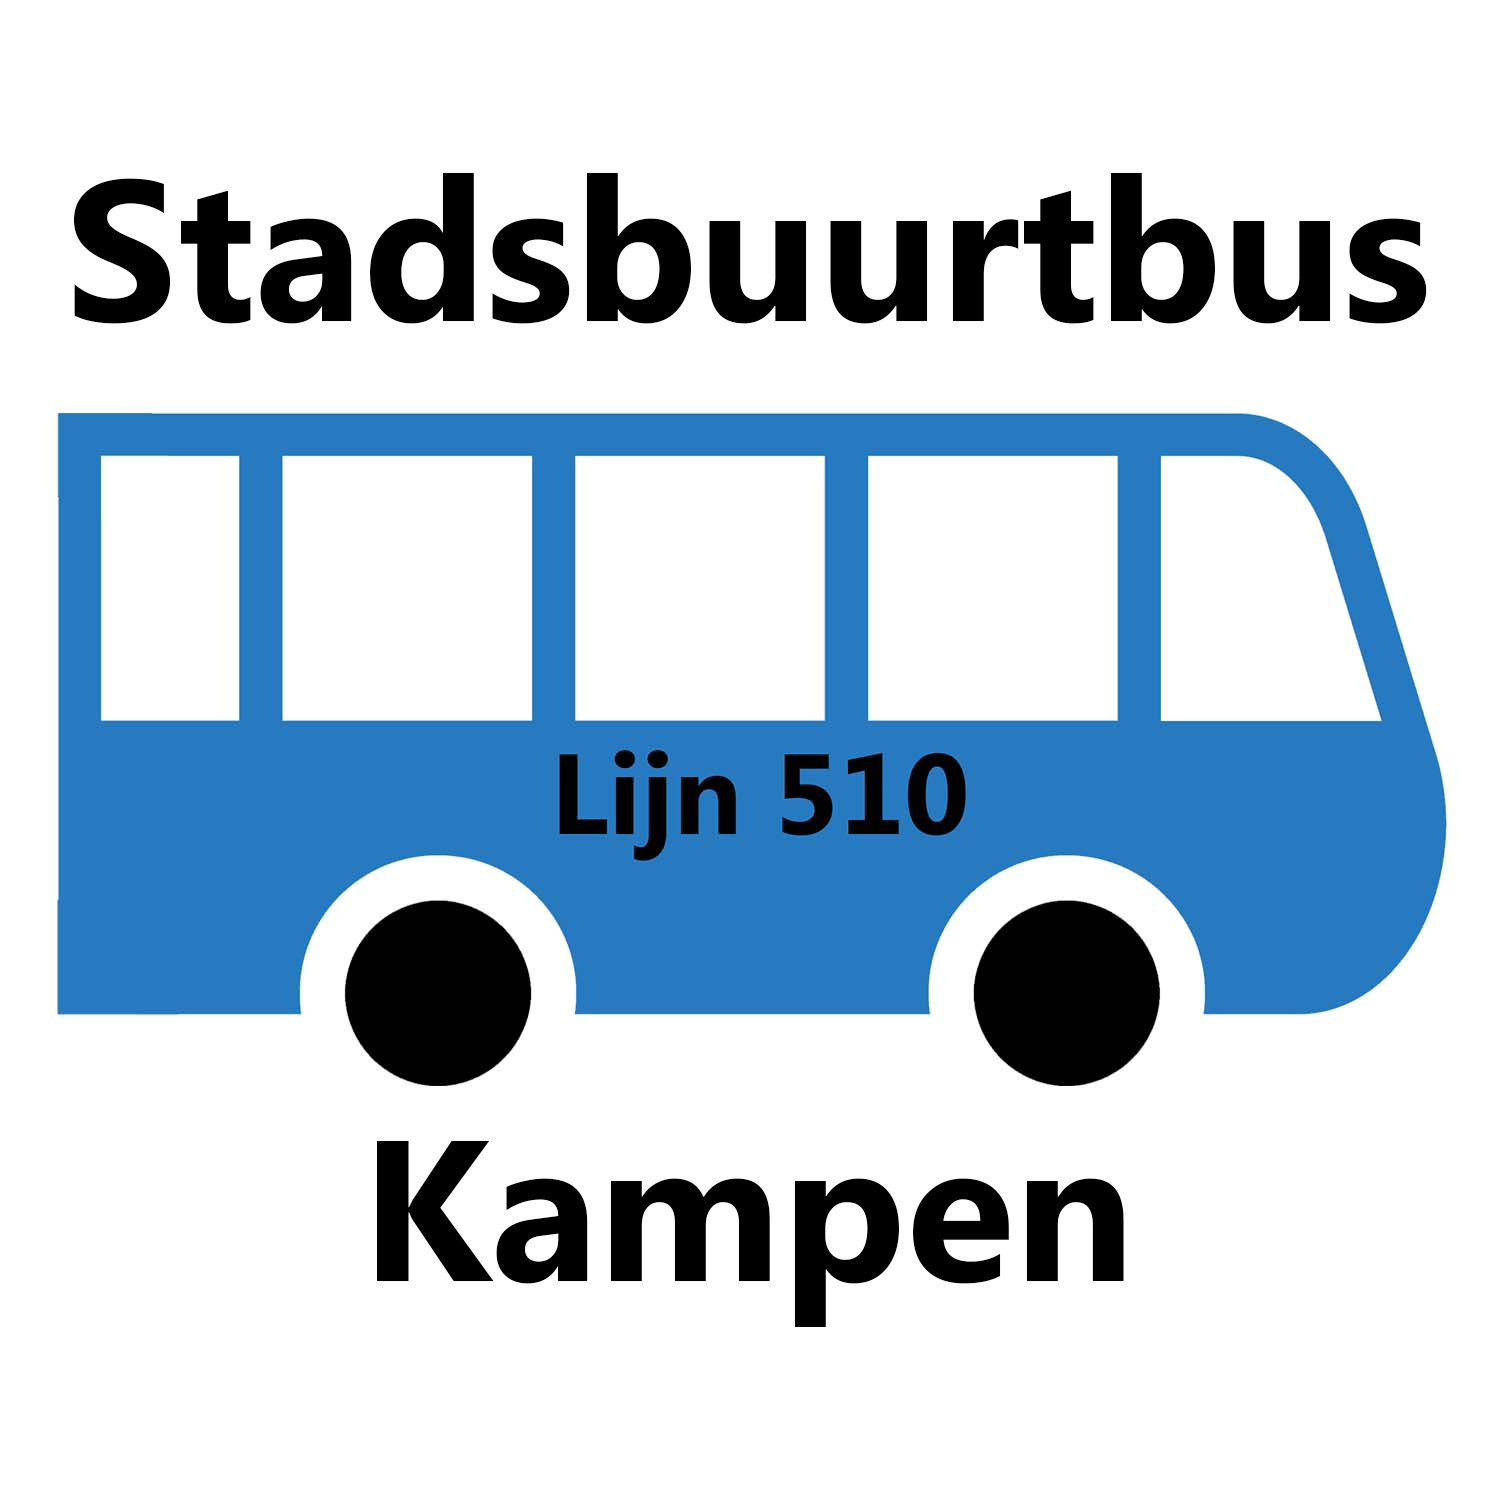 Komende week geen stakingen voor Stadsbuurtbus Kampen